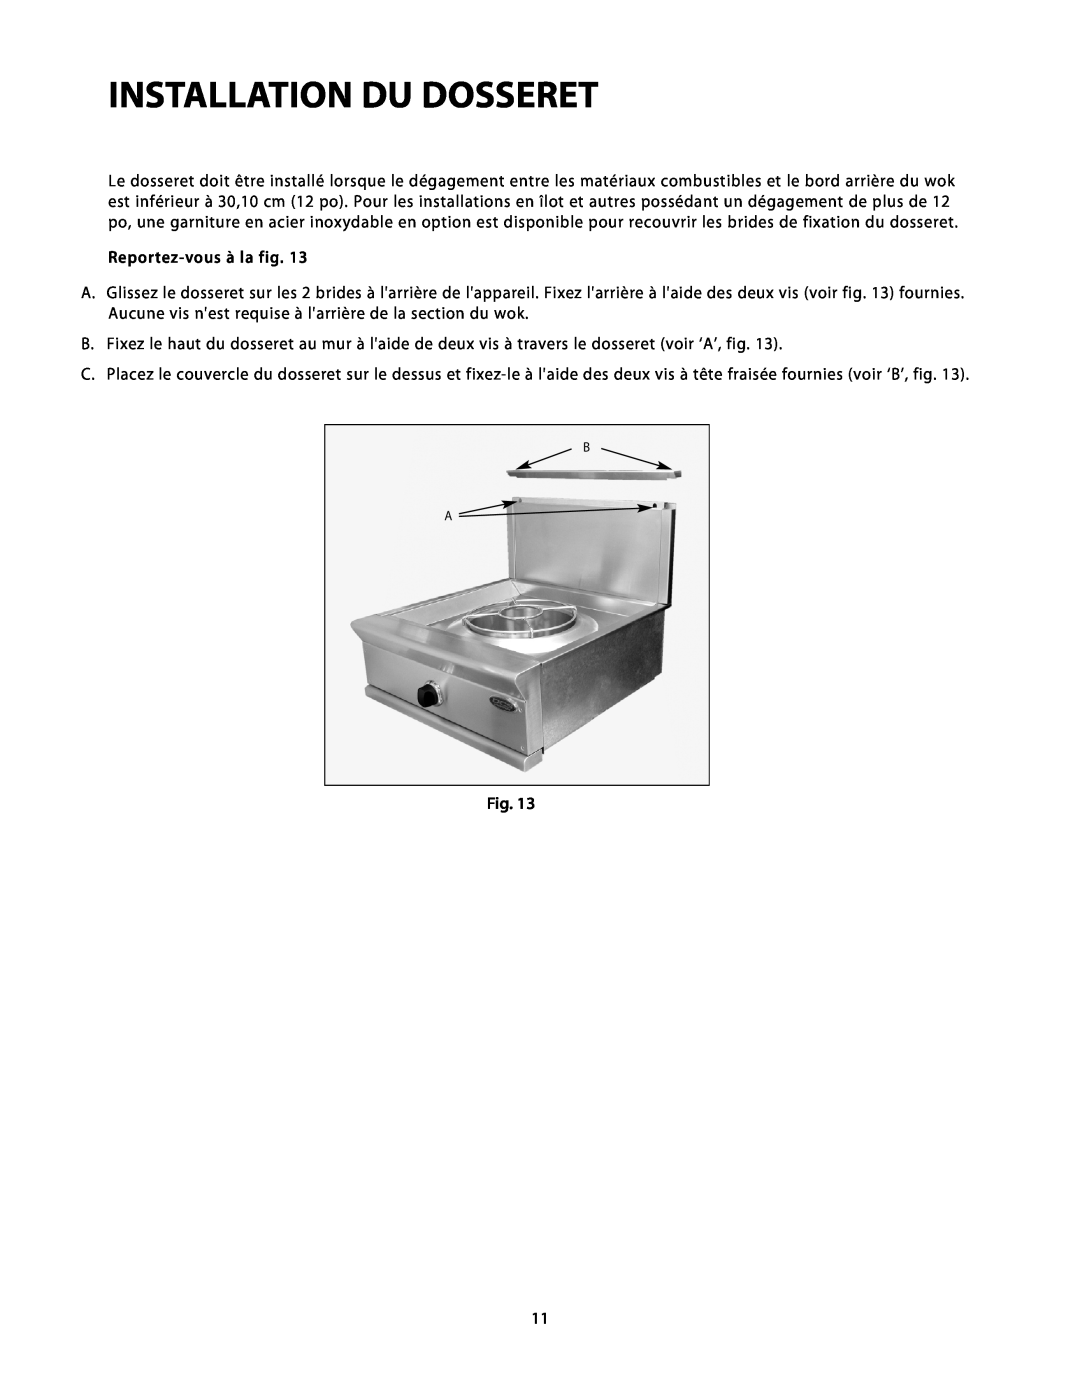 DCS C-24 installation instructions Installation Du Dosseret, Reportez-vous à la fig 